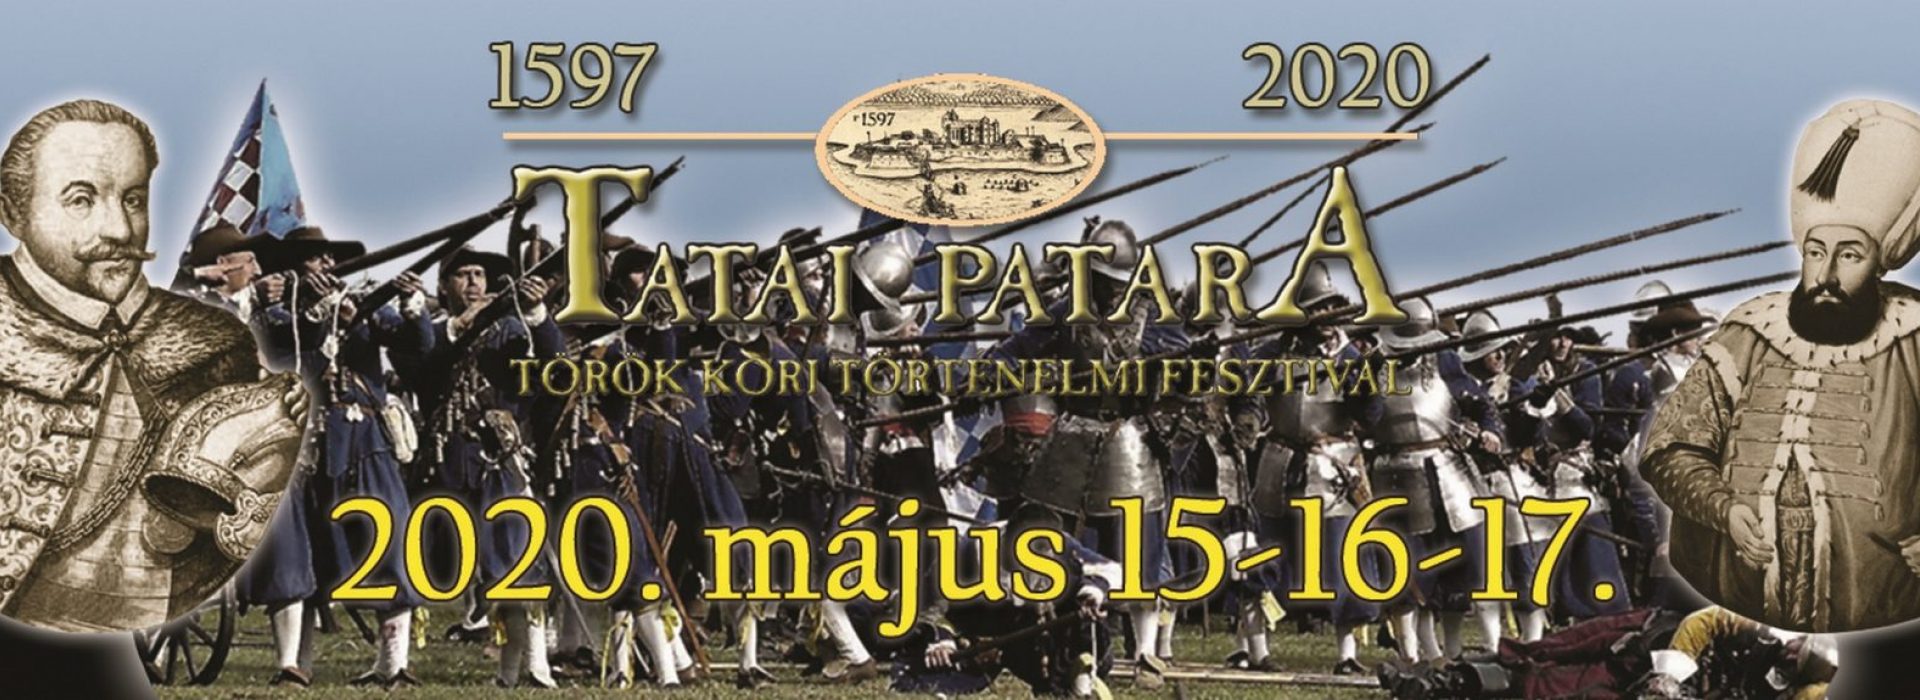 Tatai PATARA Fesztivál /Programajánló/